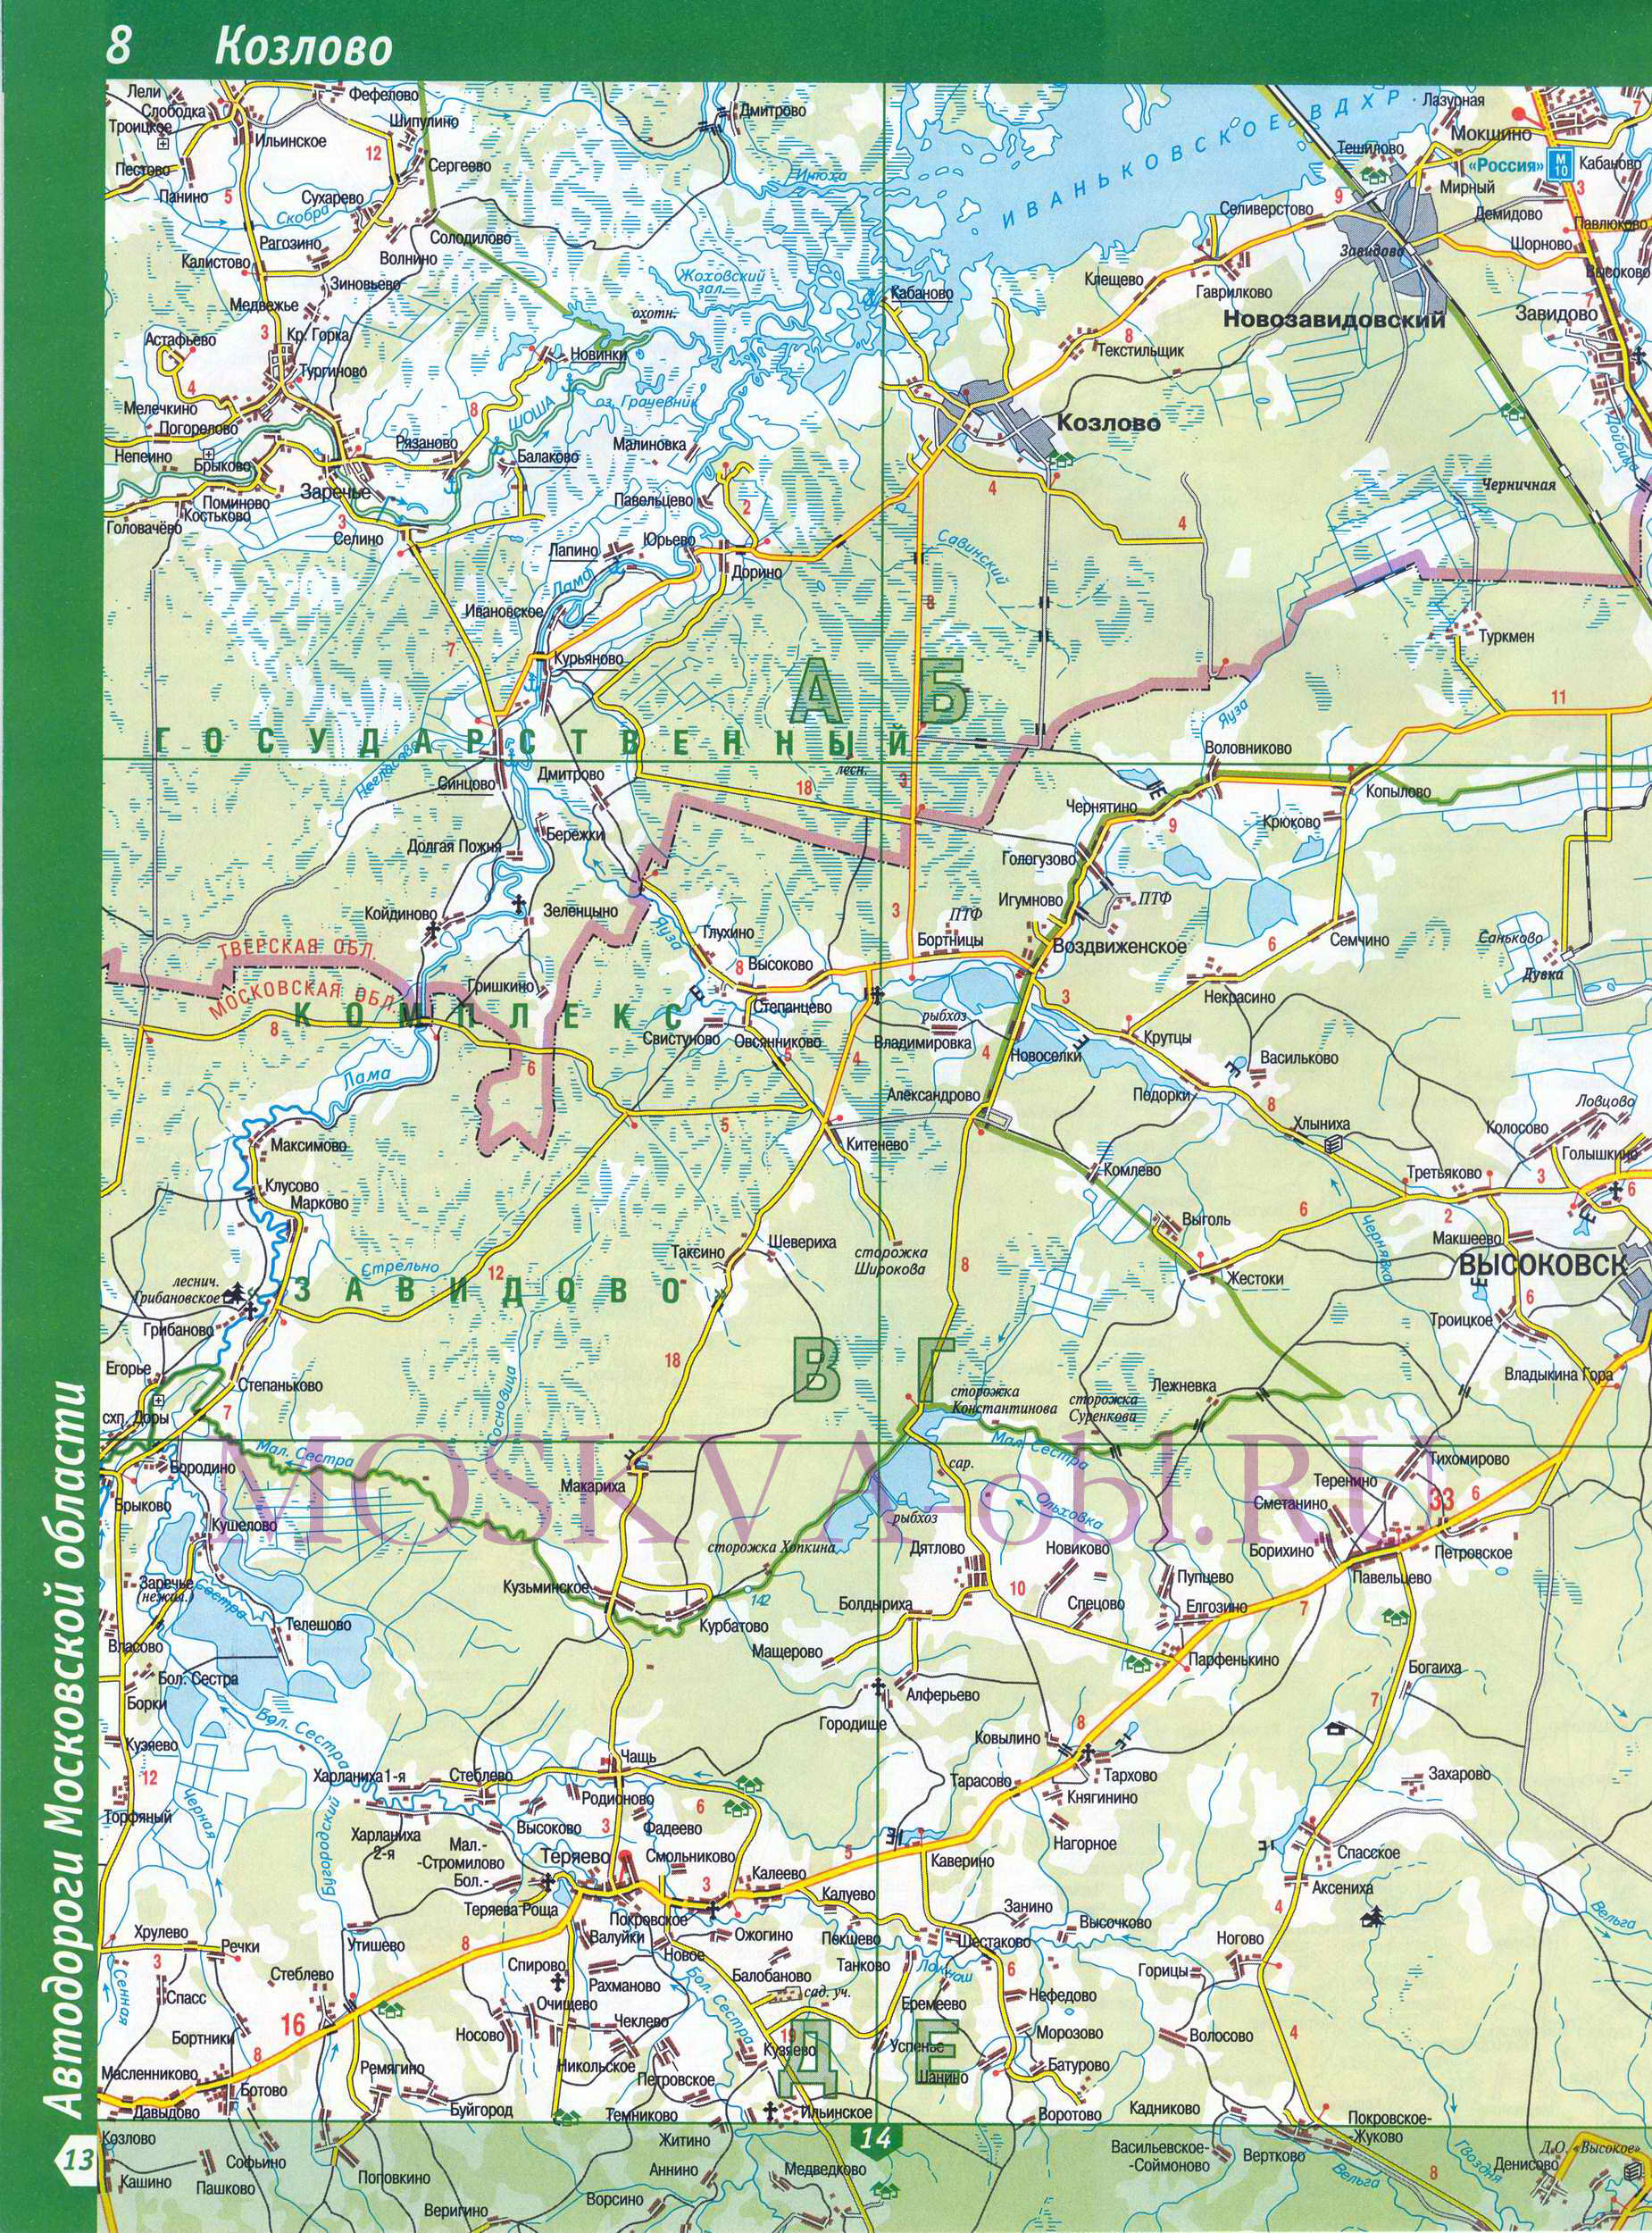 Карта Московской области. Московская область - подробная топографическая карта масштаба 1см:2км, A0 - 